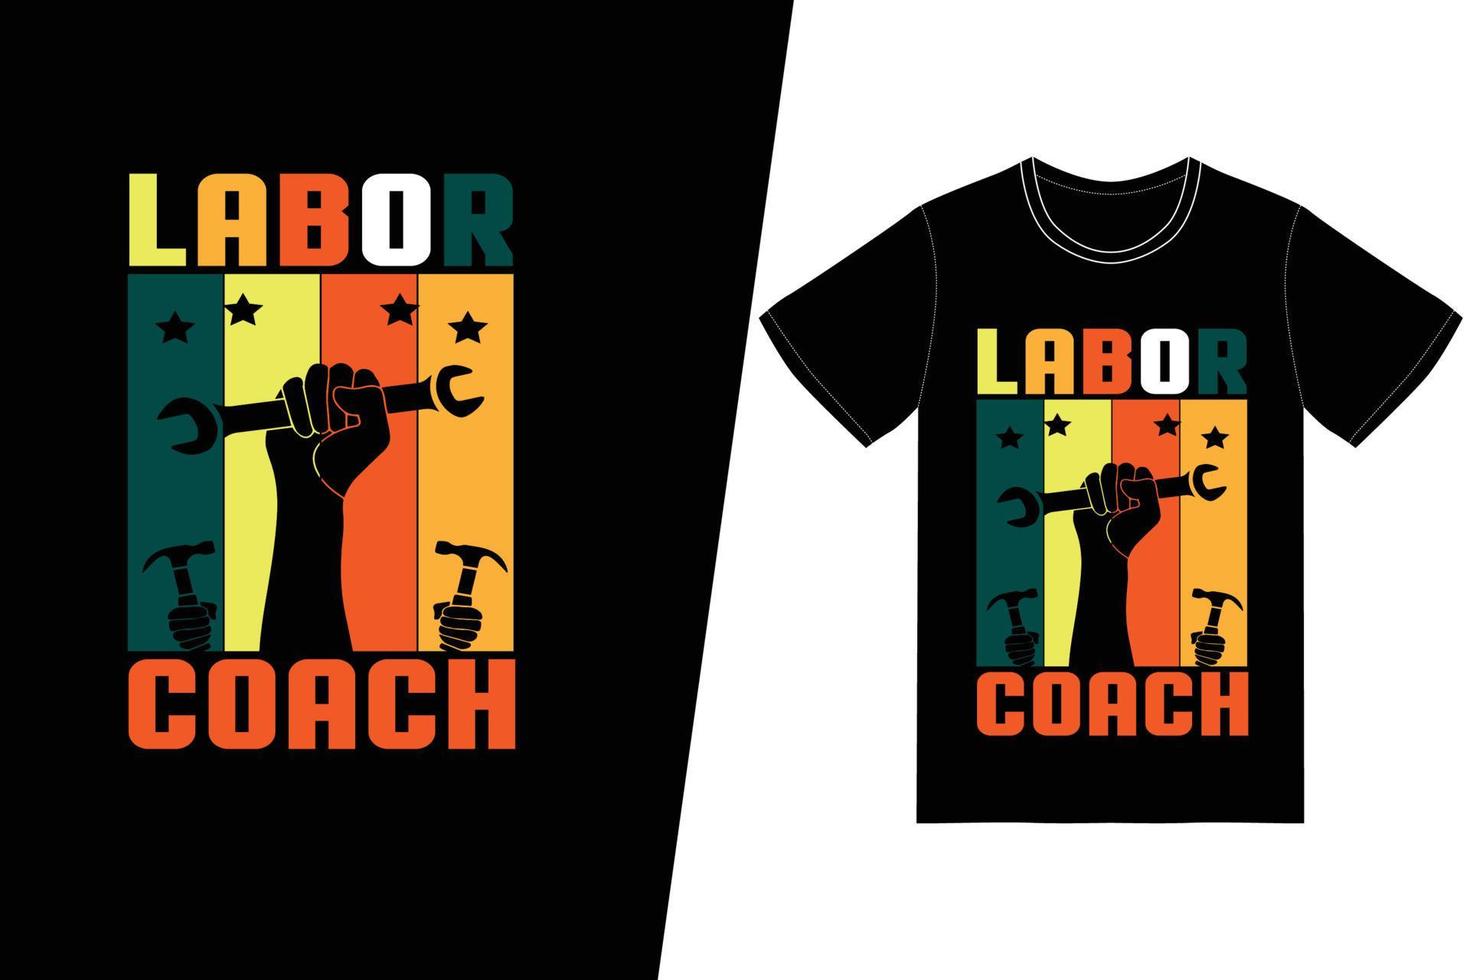 arbeid coach t-shirt ontwerp. dag van de arbeid t-shirt ontwerp vector. voor t-shirt print en ander gebruik. vector